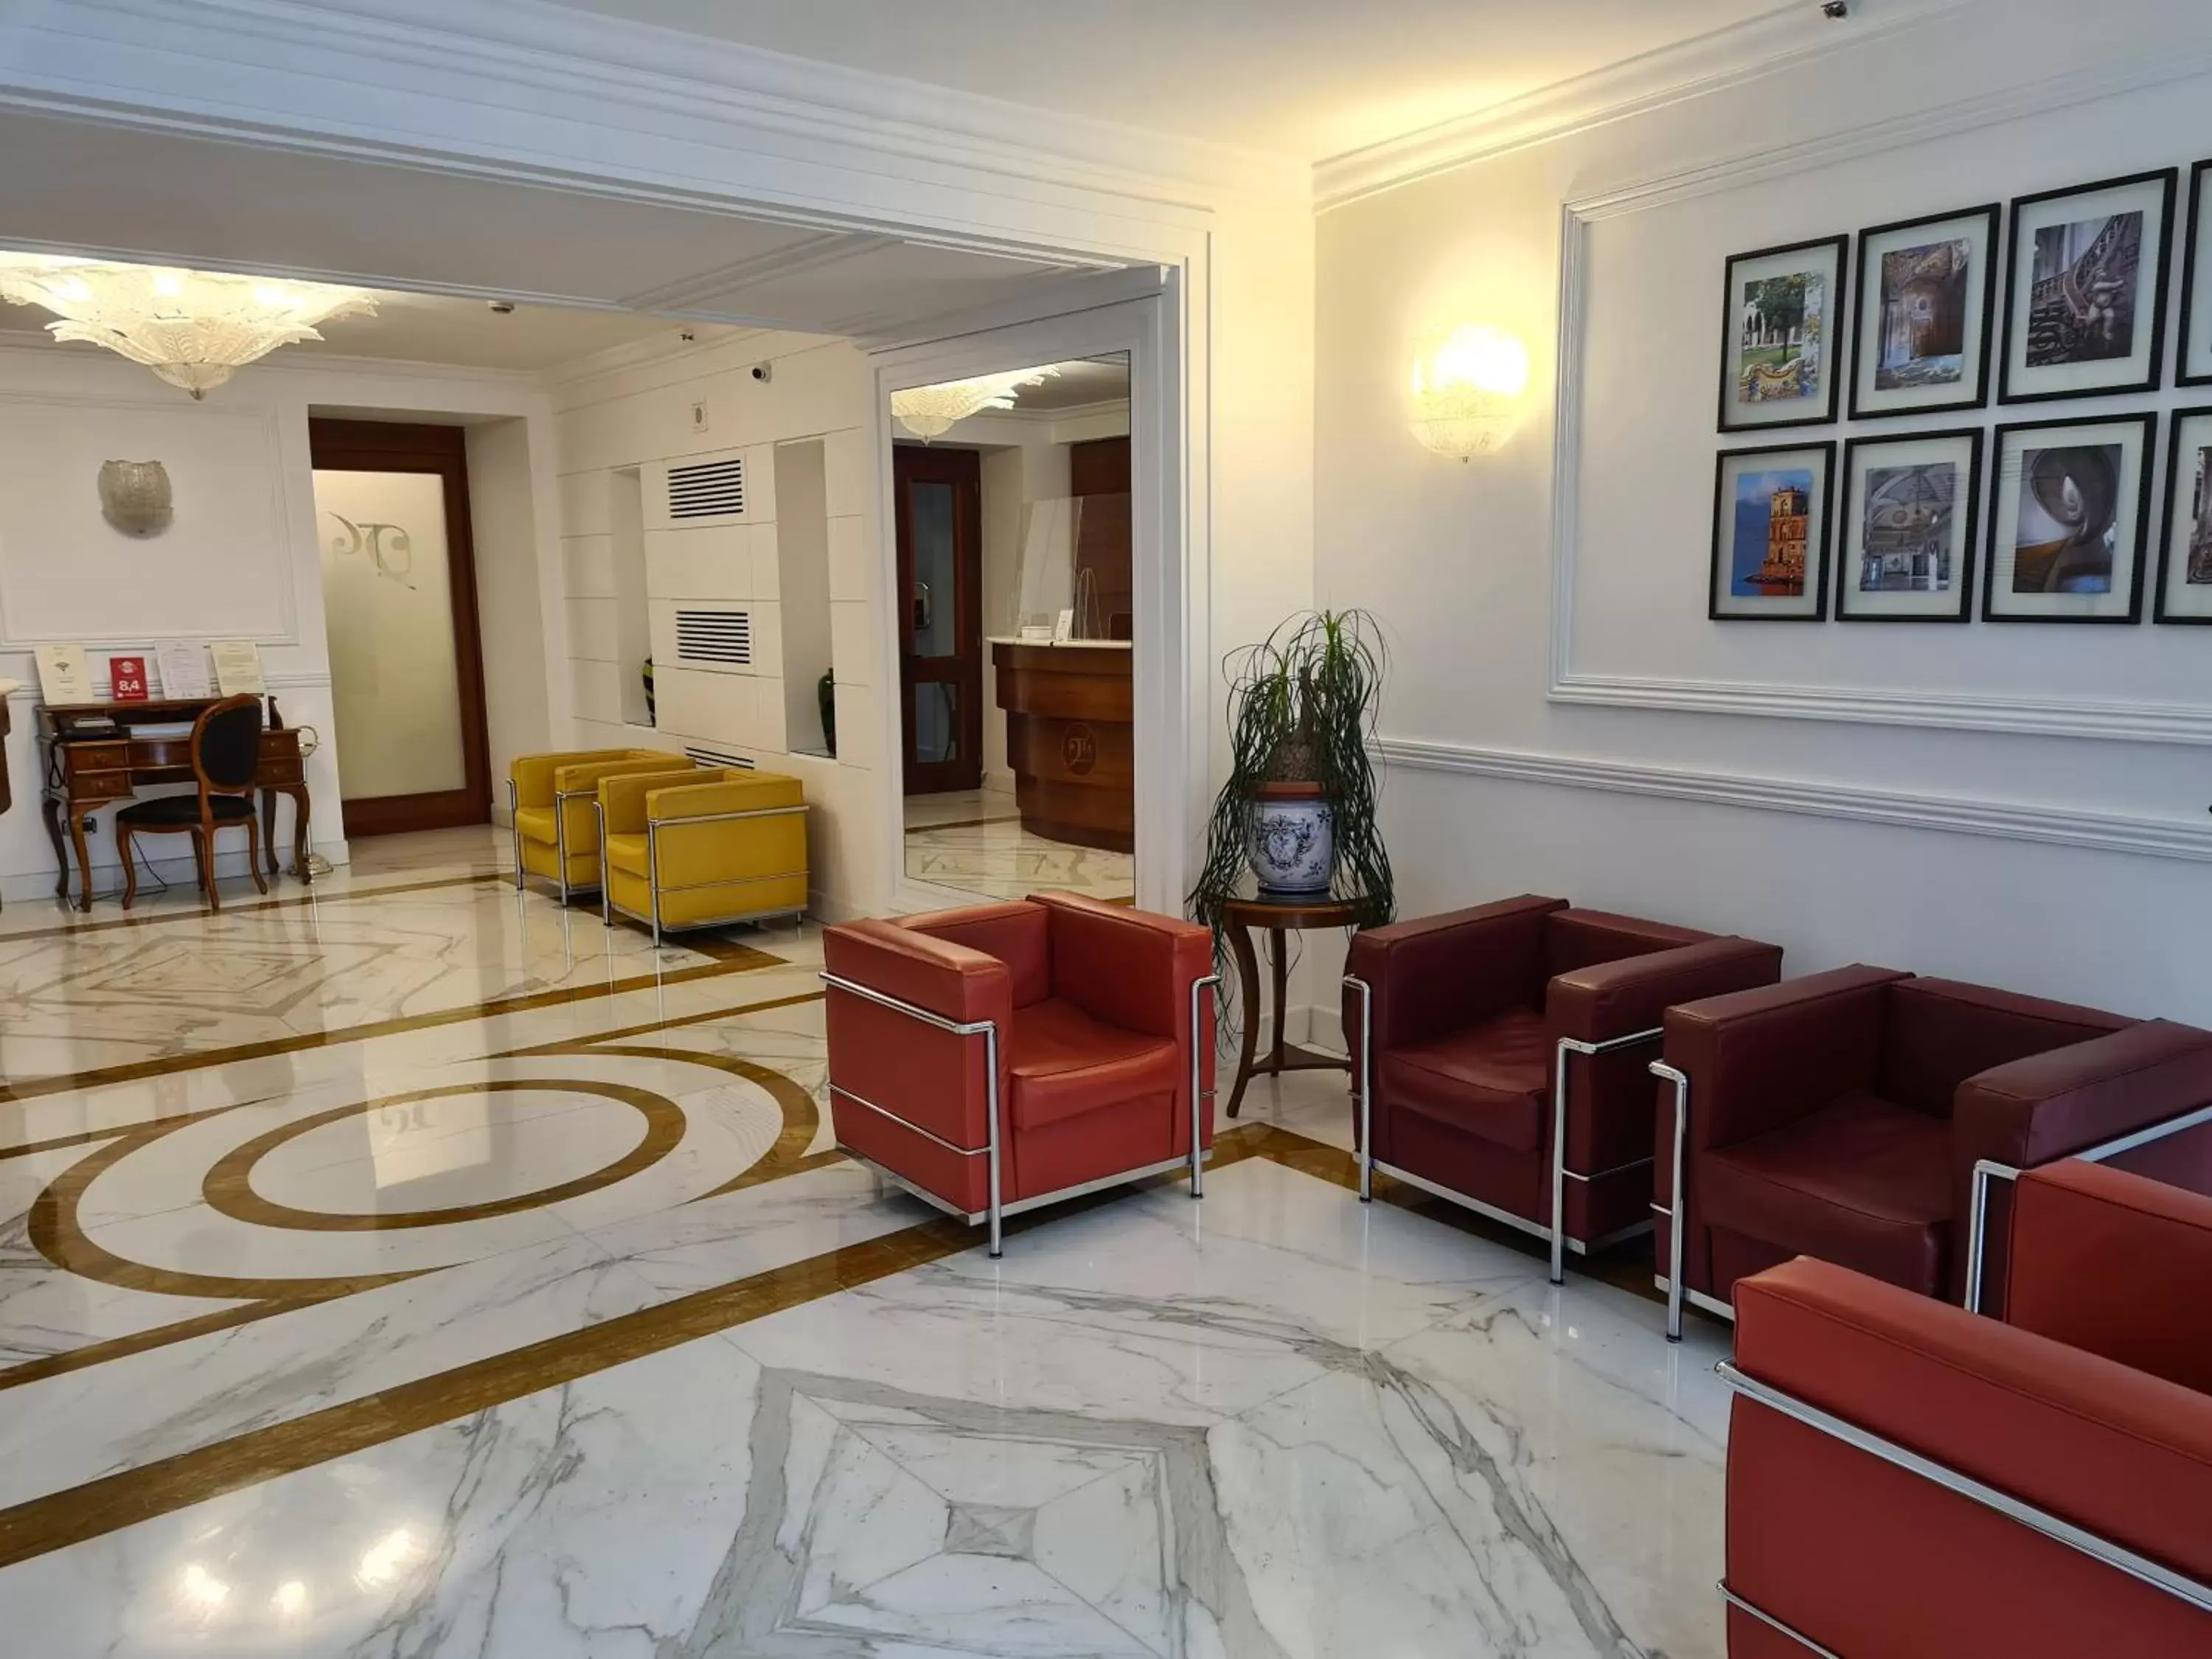 Lobby or reception, Lobby/Reception in Palazzo Turchini